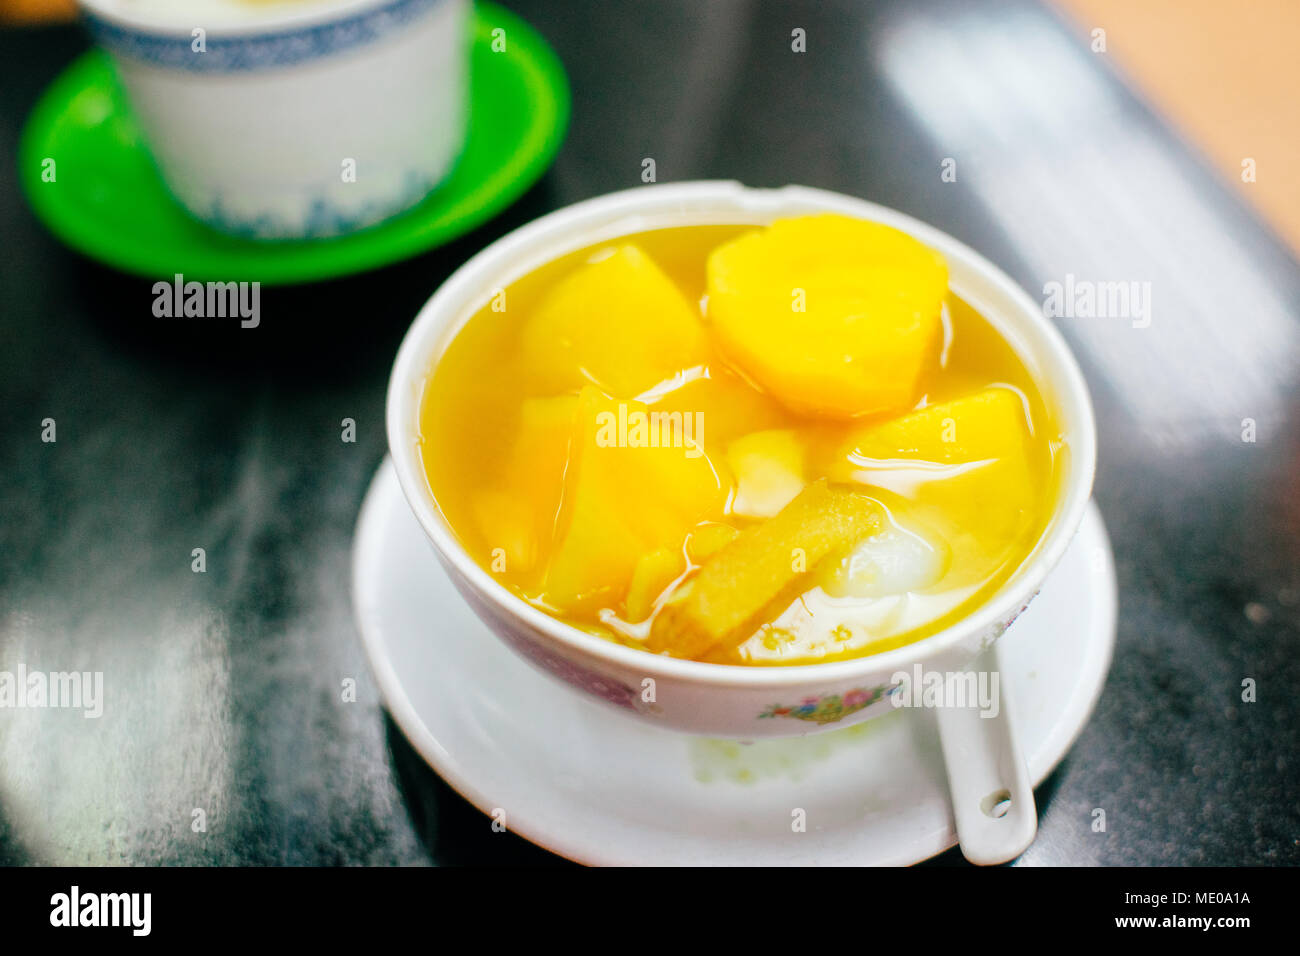 La patate douce en dessert, une soupe de gingembre chaud dessert commun à Hong Kong Banque D'Images